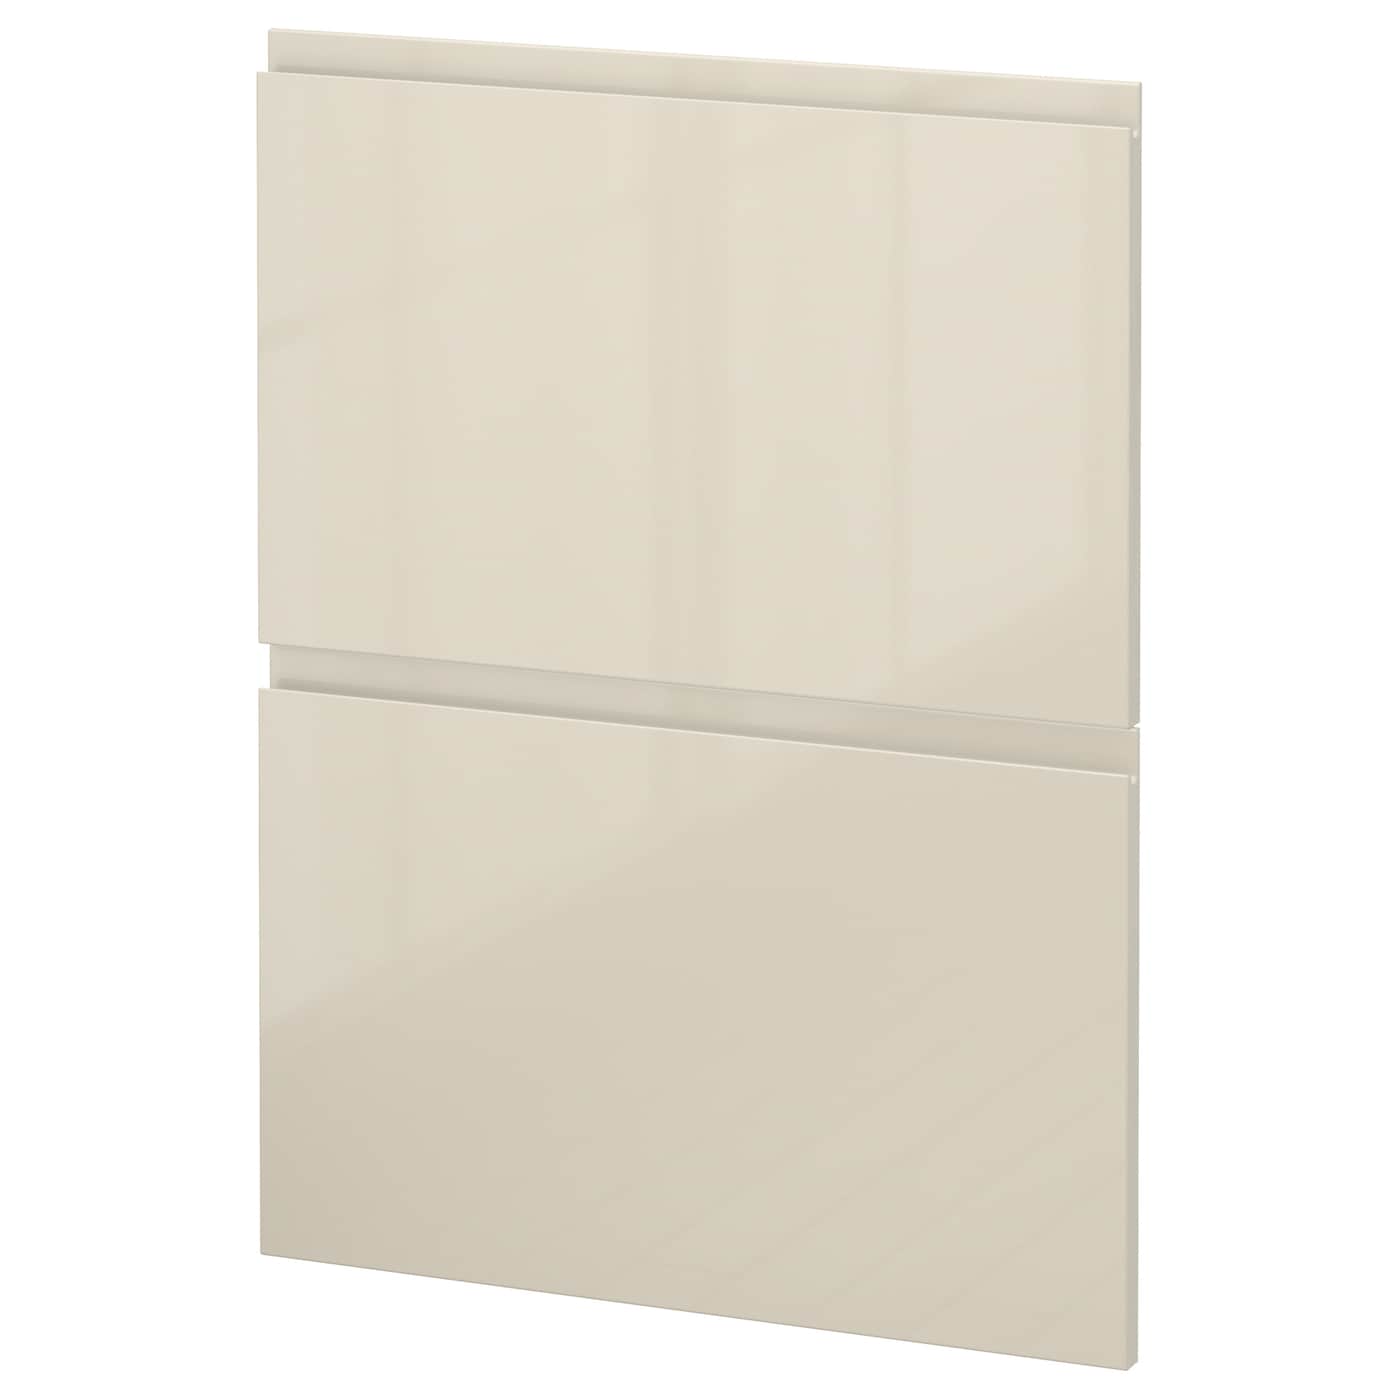 Накладная панель для посудомоечной машины - IKEA METOD, 80х60 см, светло-бежевый, МЕТОД ИКЕА